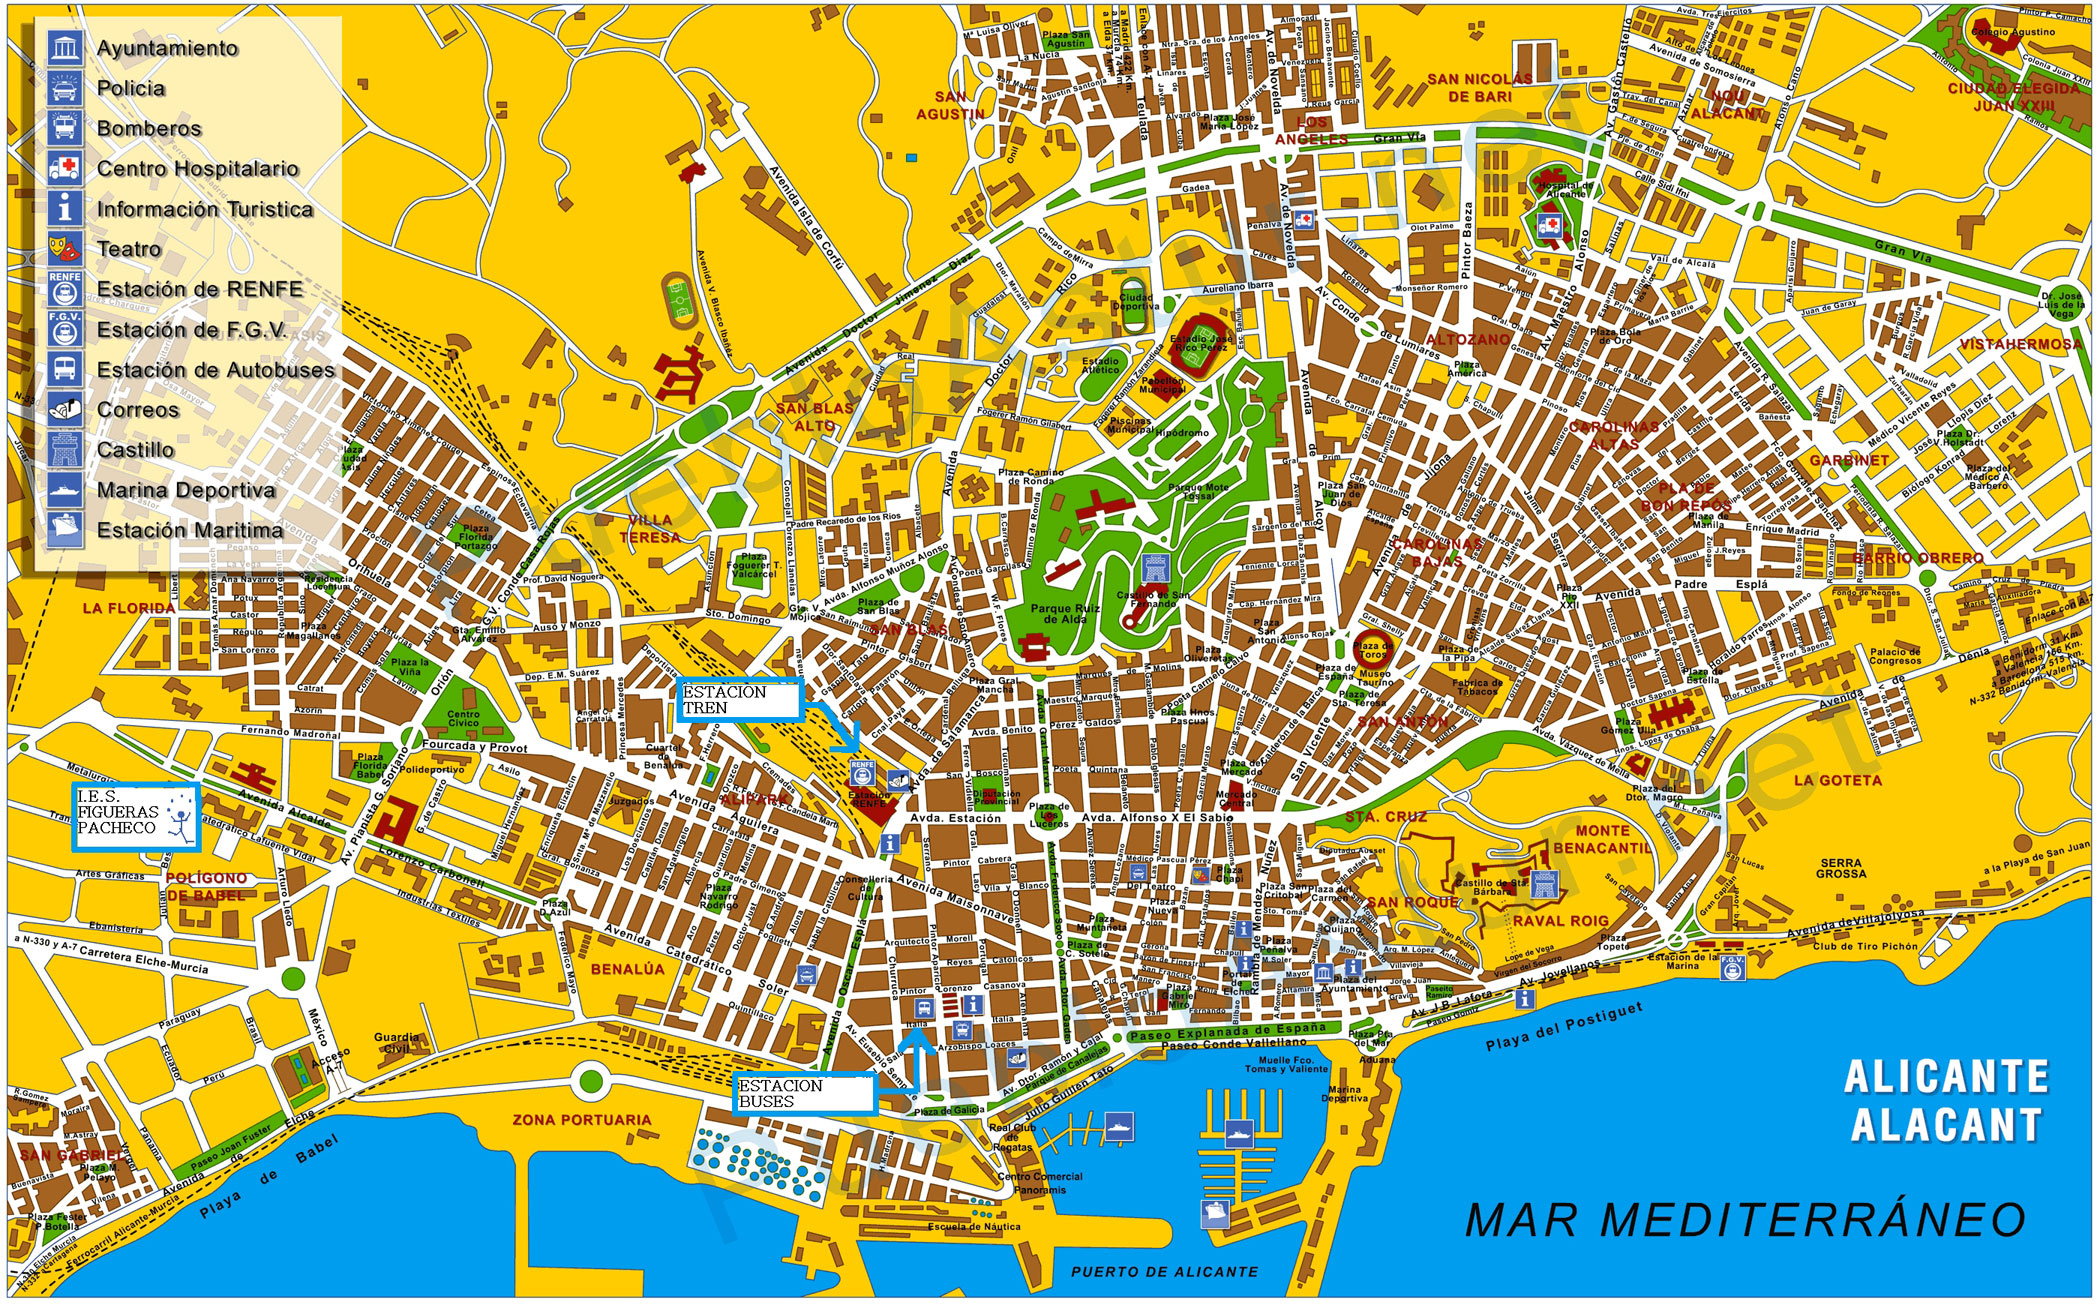 Alicante map - Full size